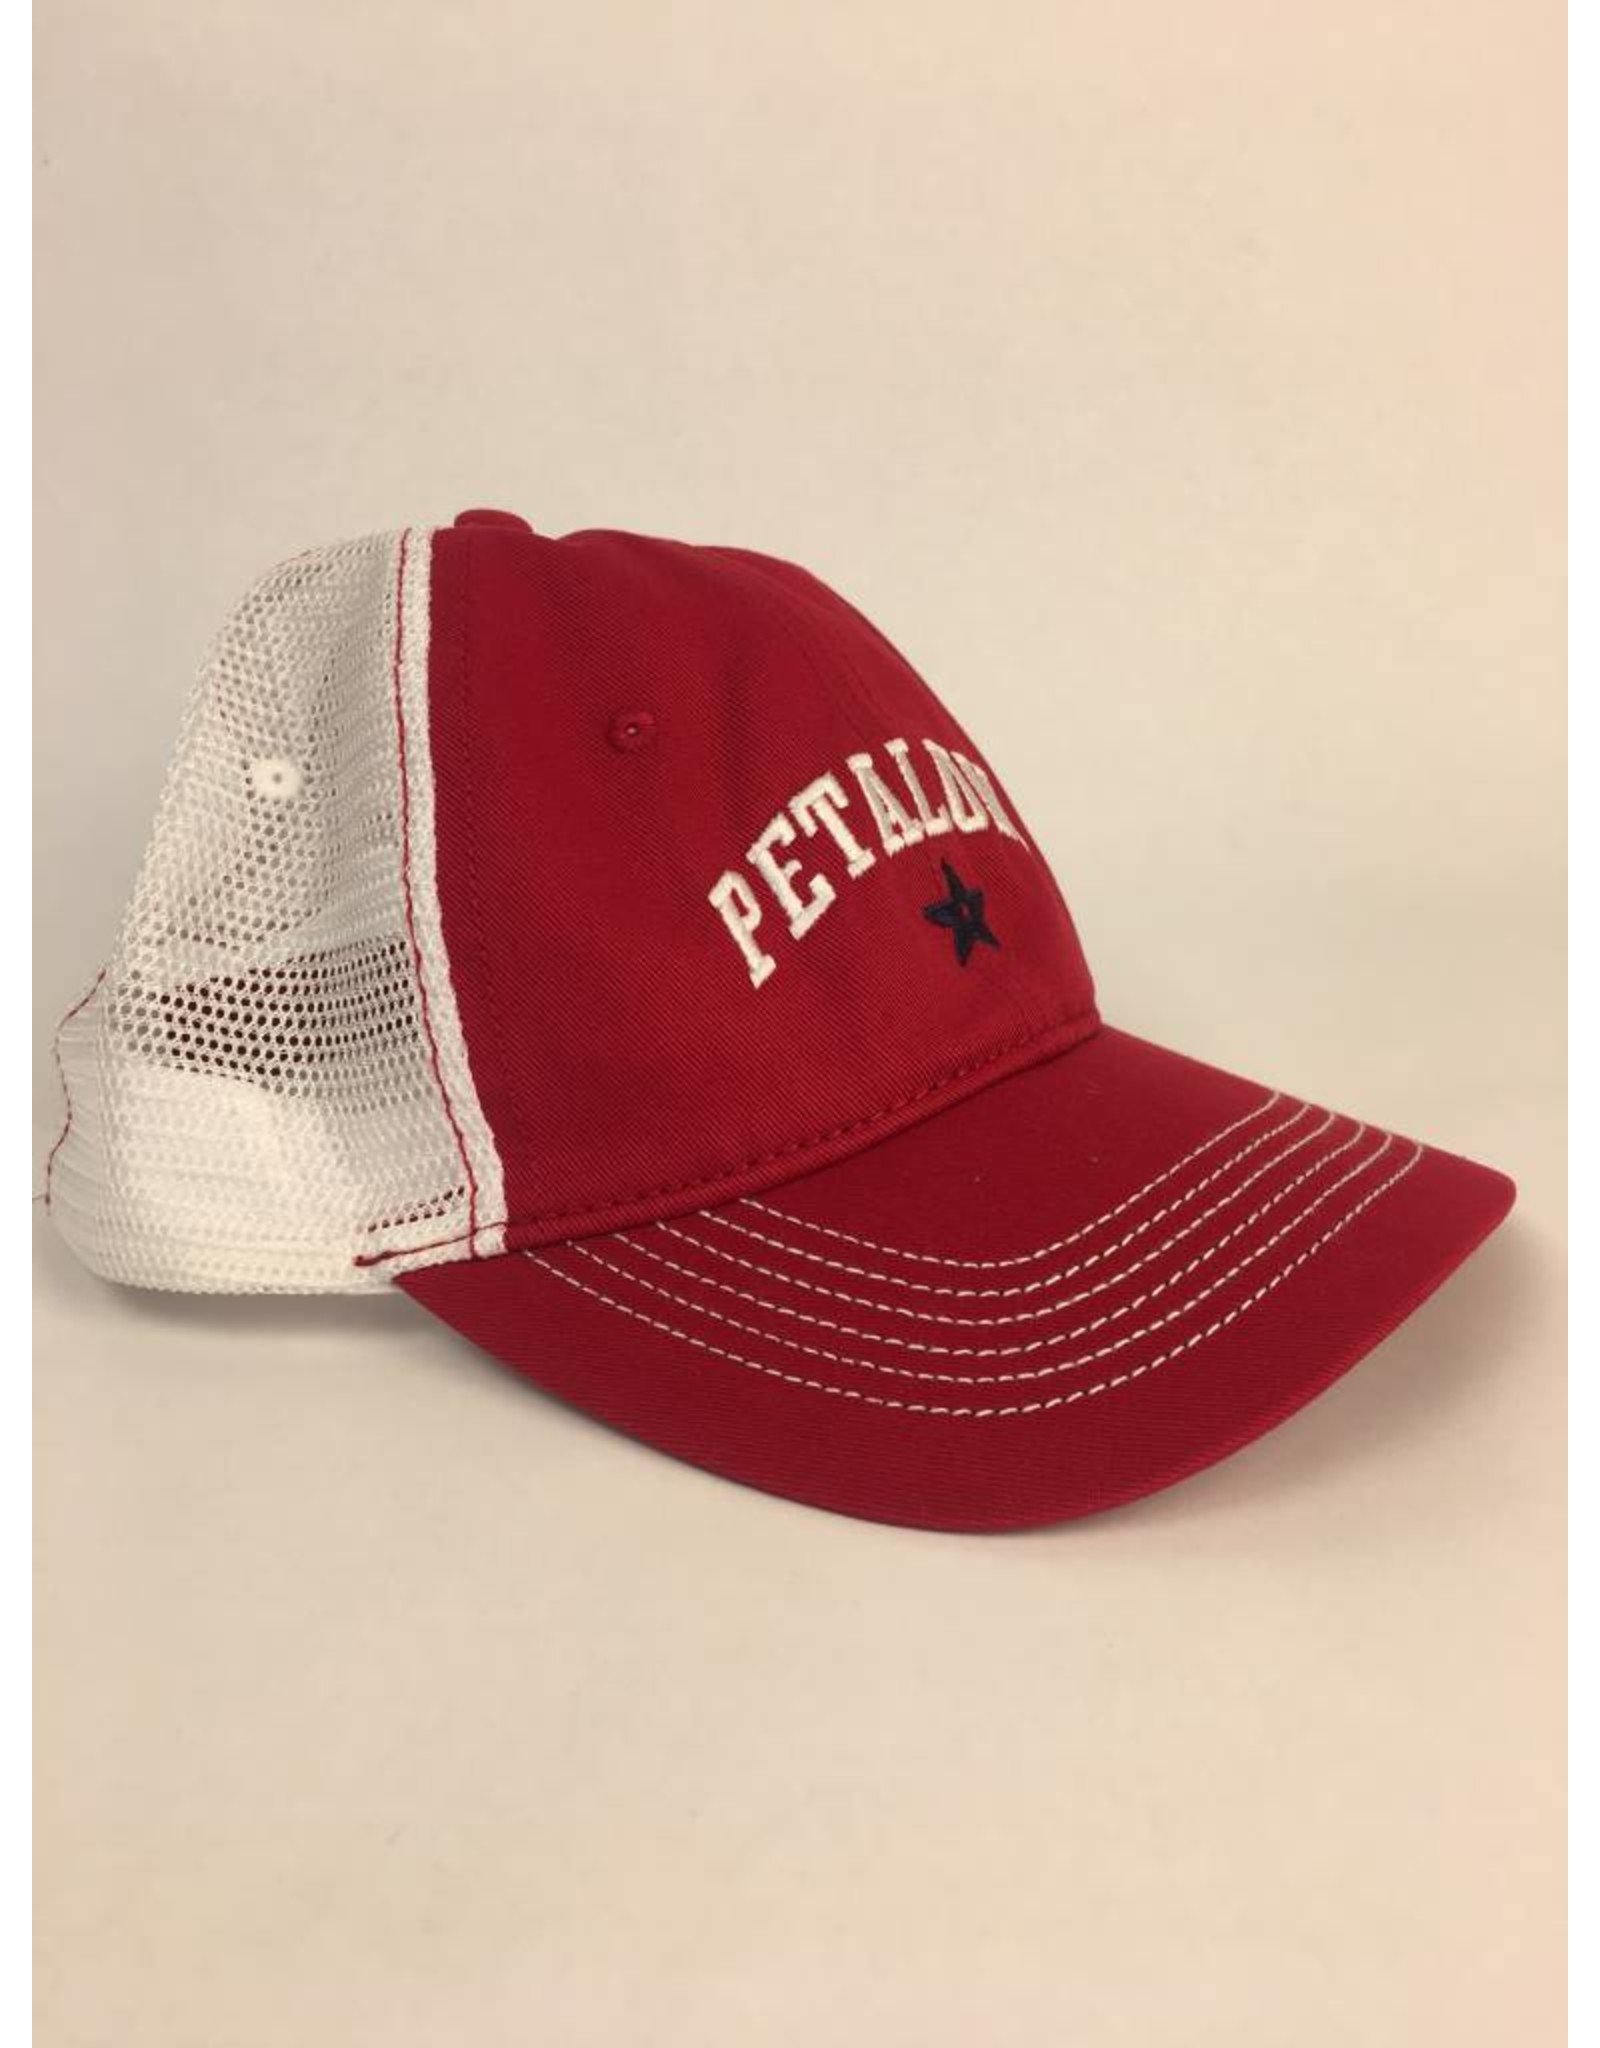 Petaluma trucker cap - Red